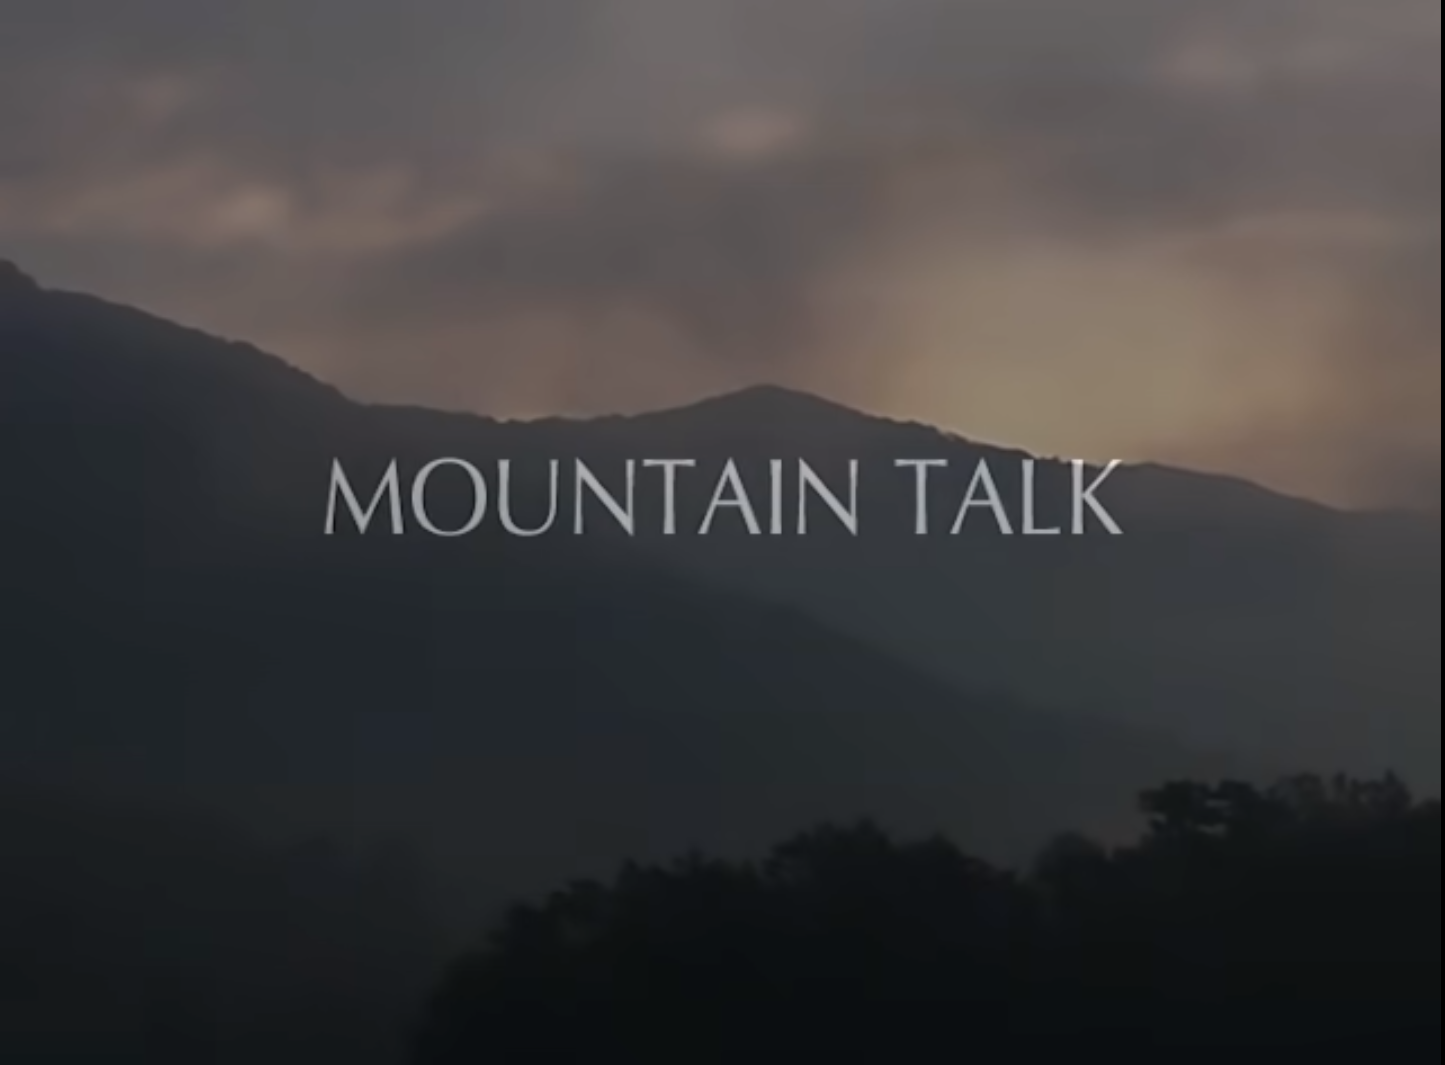 Mountain Talk